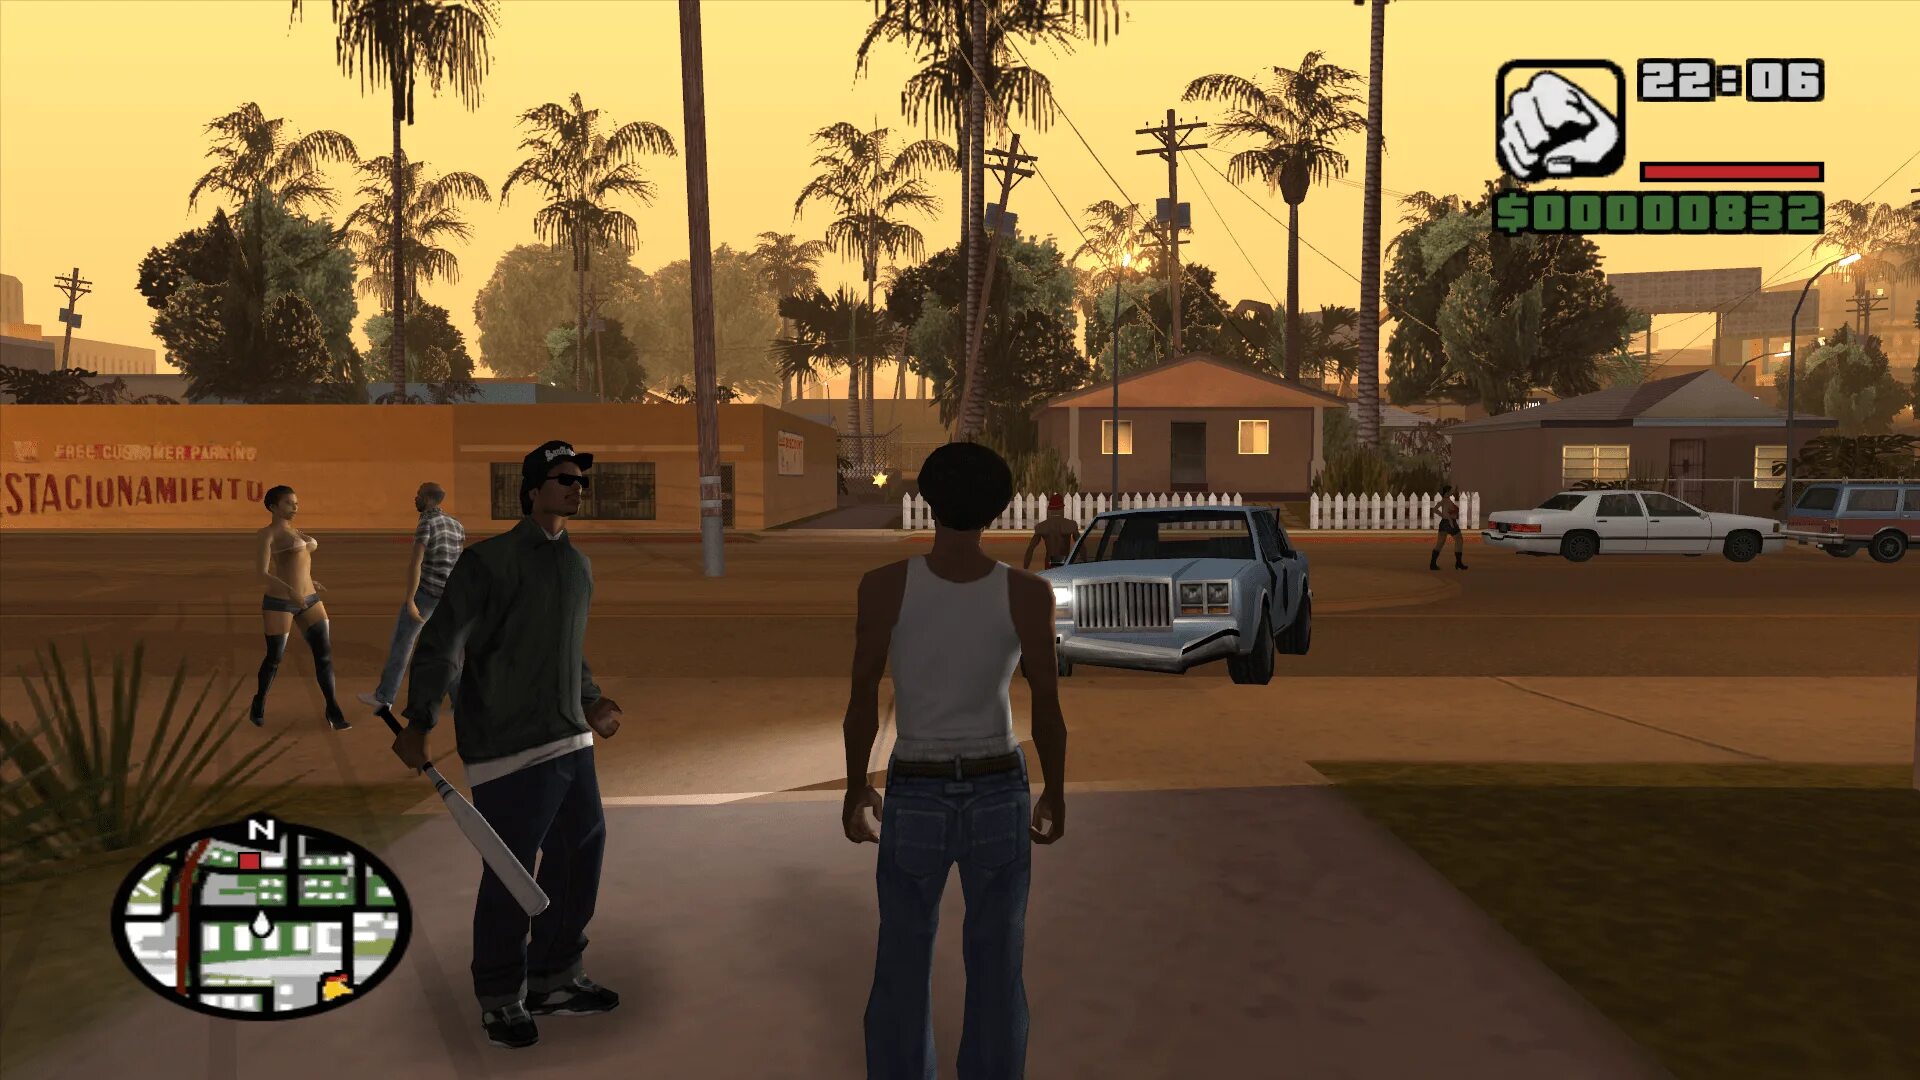 Игра гта обзор. Grand Theft auto Сан андреас. Grand Theft Anto San Adreas. Grand Theft auto San Andreas Grand. Grand Theft auto: San Andreas 2.